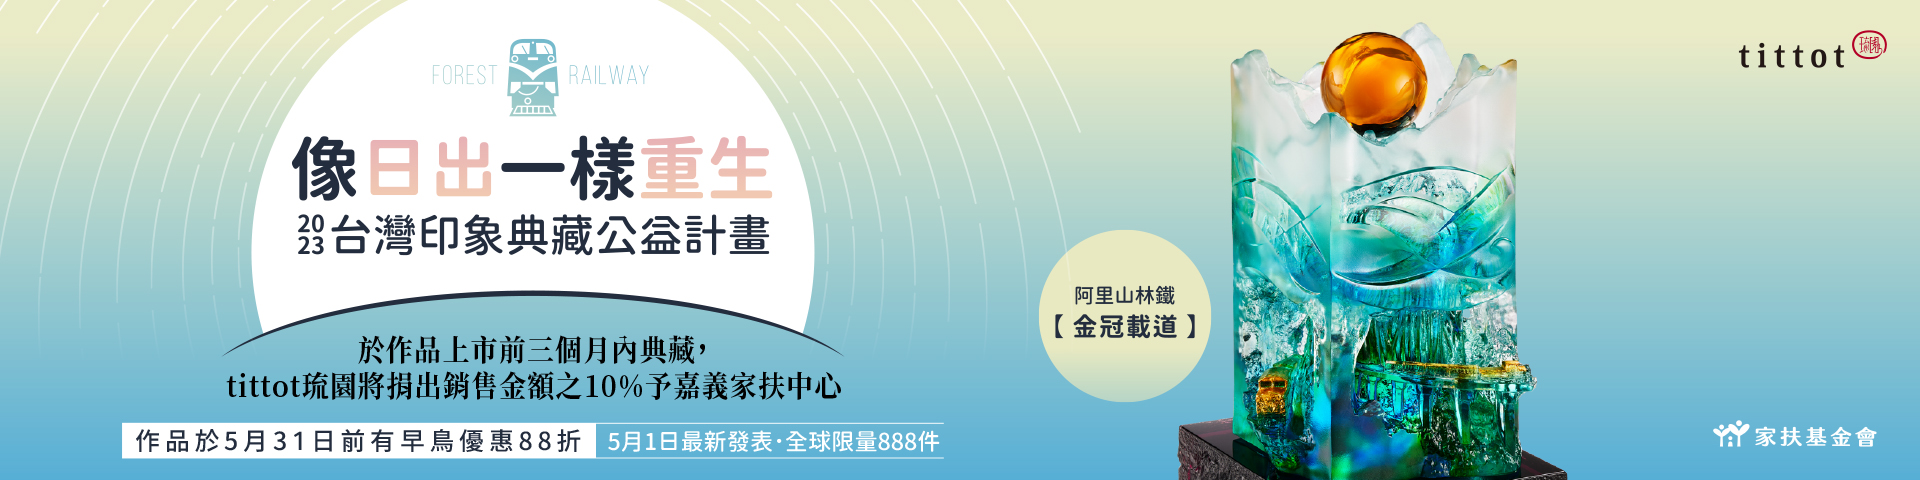 台灣印象公益計畫